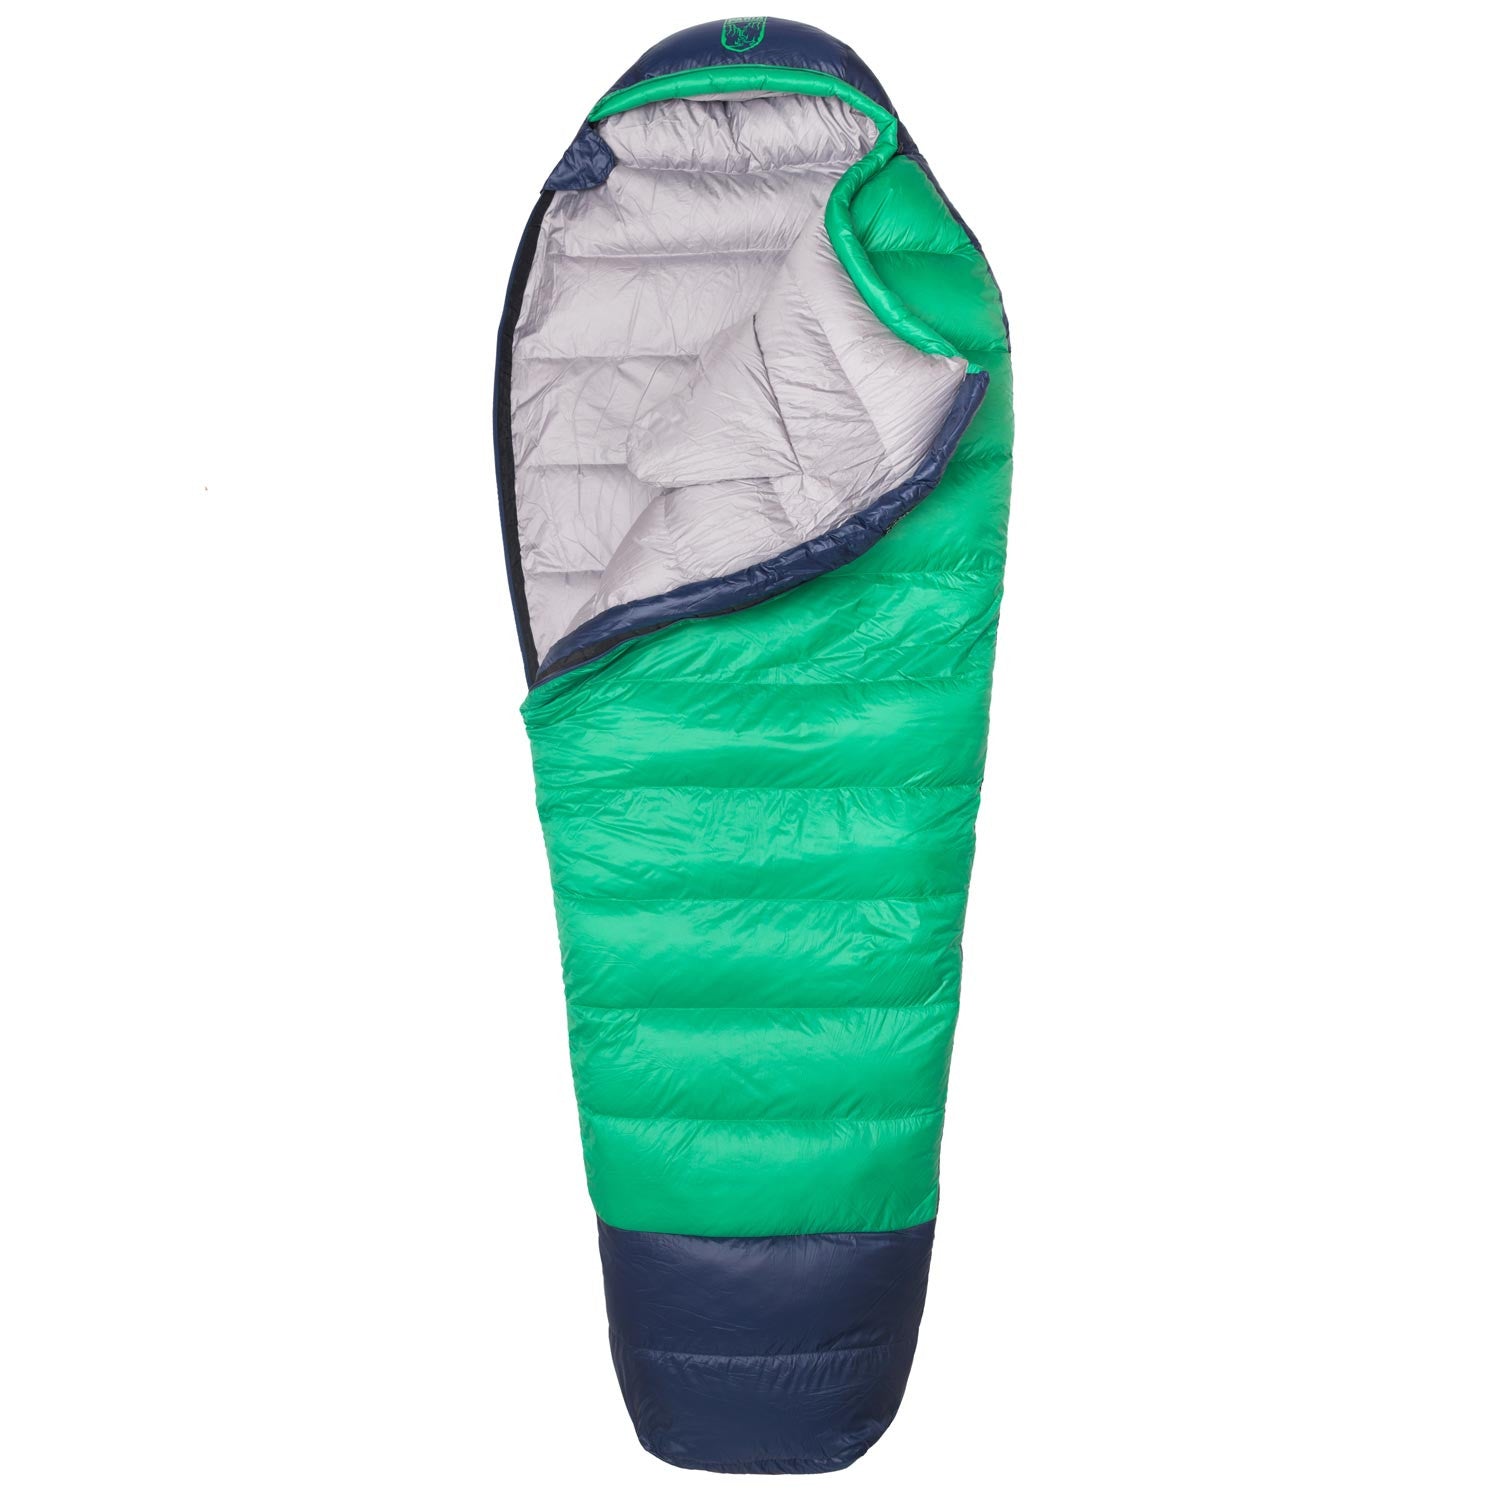  INOOMP 8 Pcs Sleeping Bag Outdoor Thermal Blanket